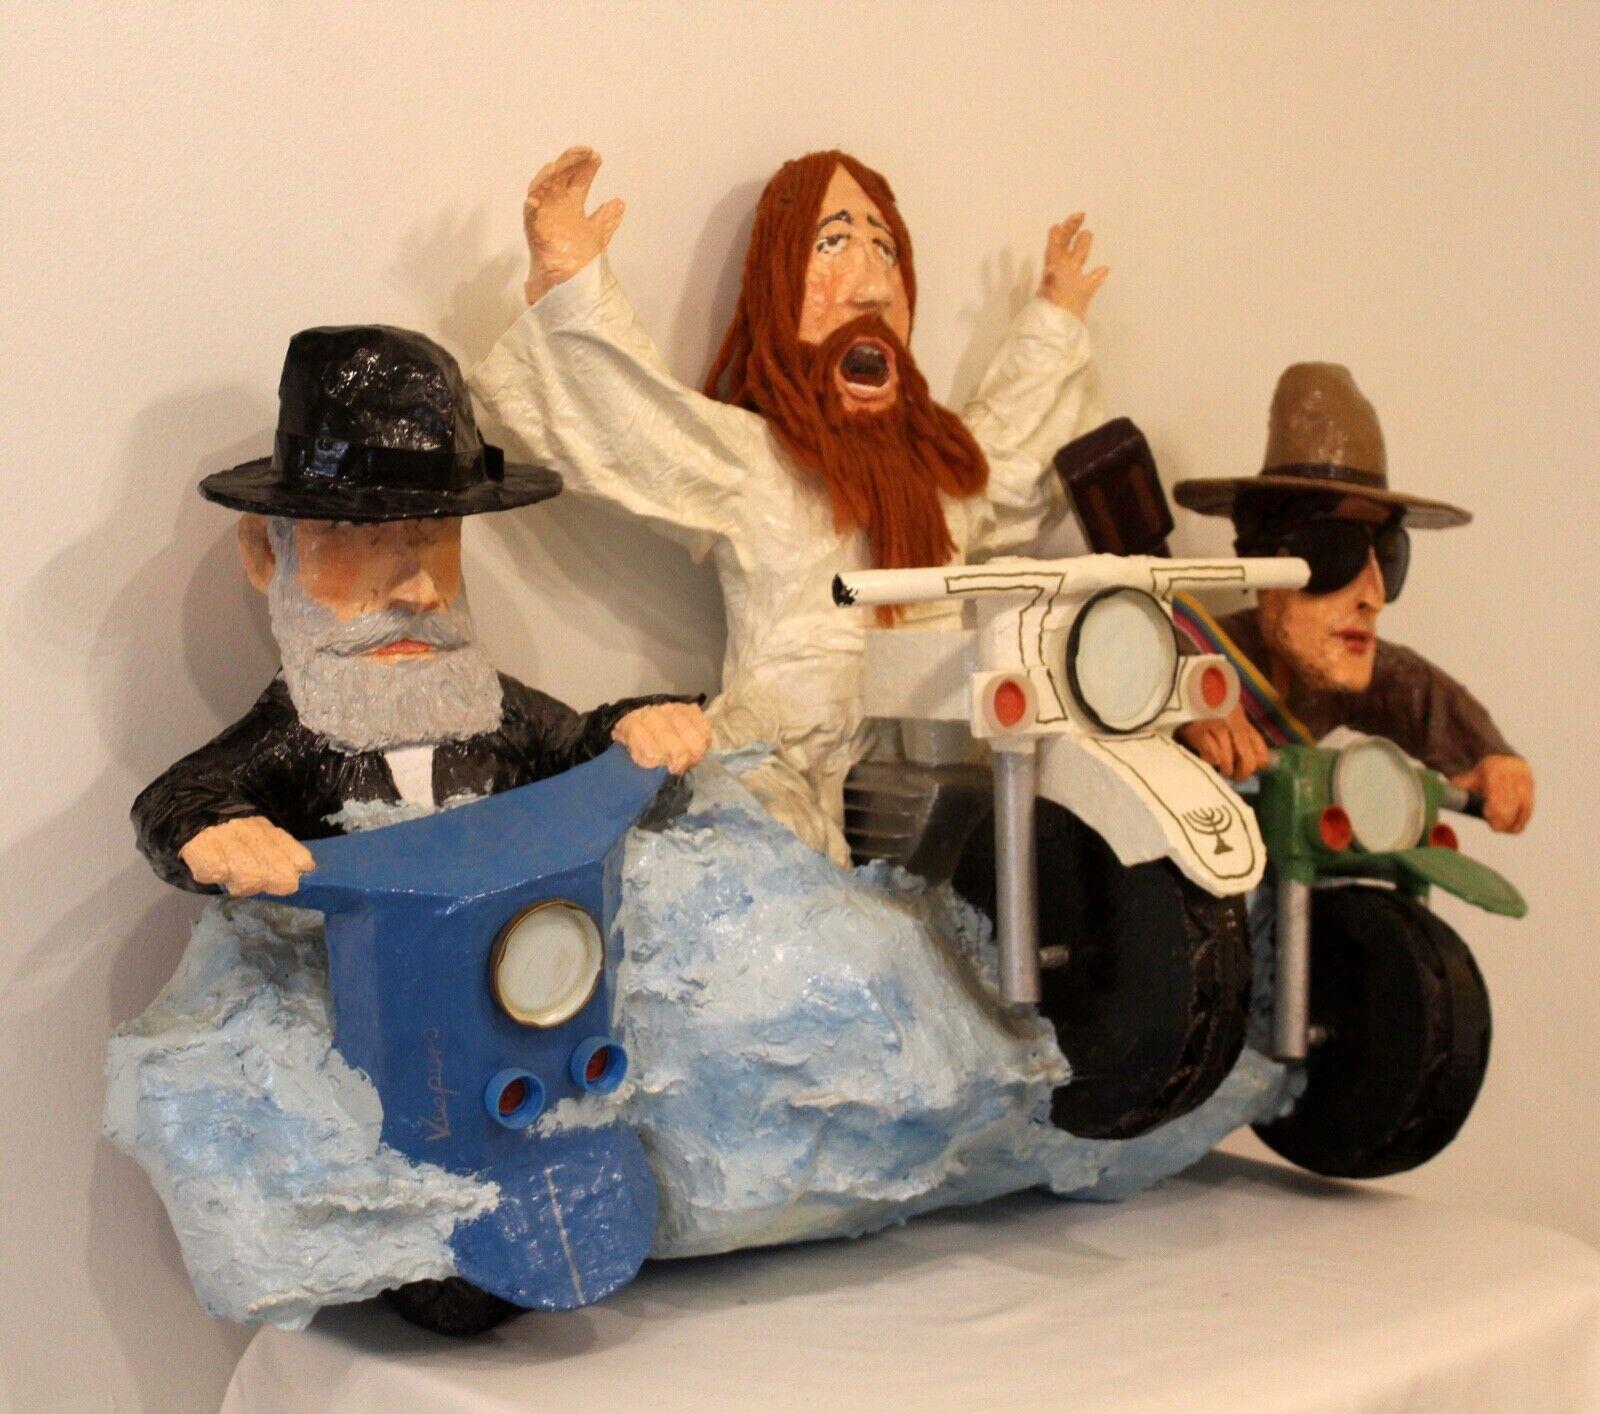 Jésus, le lapin Hassidic et Bob Dylan chevauchant une moto, prennent la route au moment où Jésus prend littéralement la roue. L'expression de l'émerveillement sur les visages des trois personnages alors qu'ils sont en train de courir dans les rues